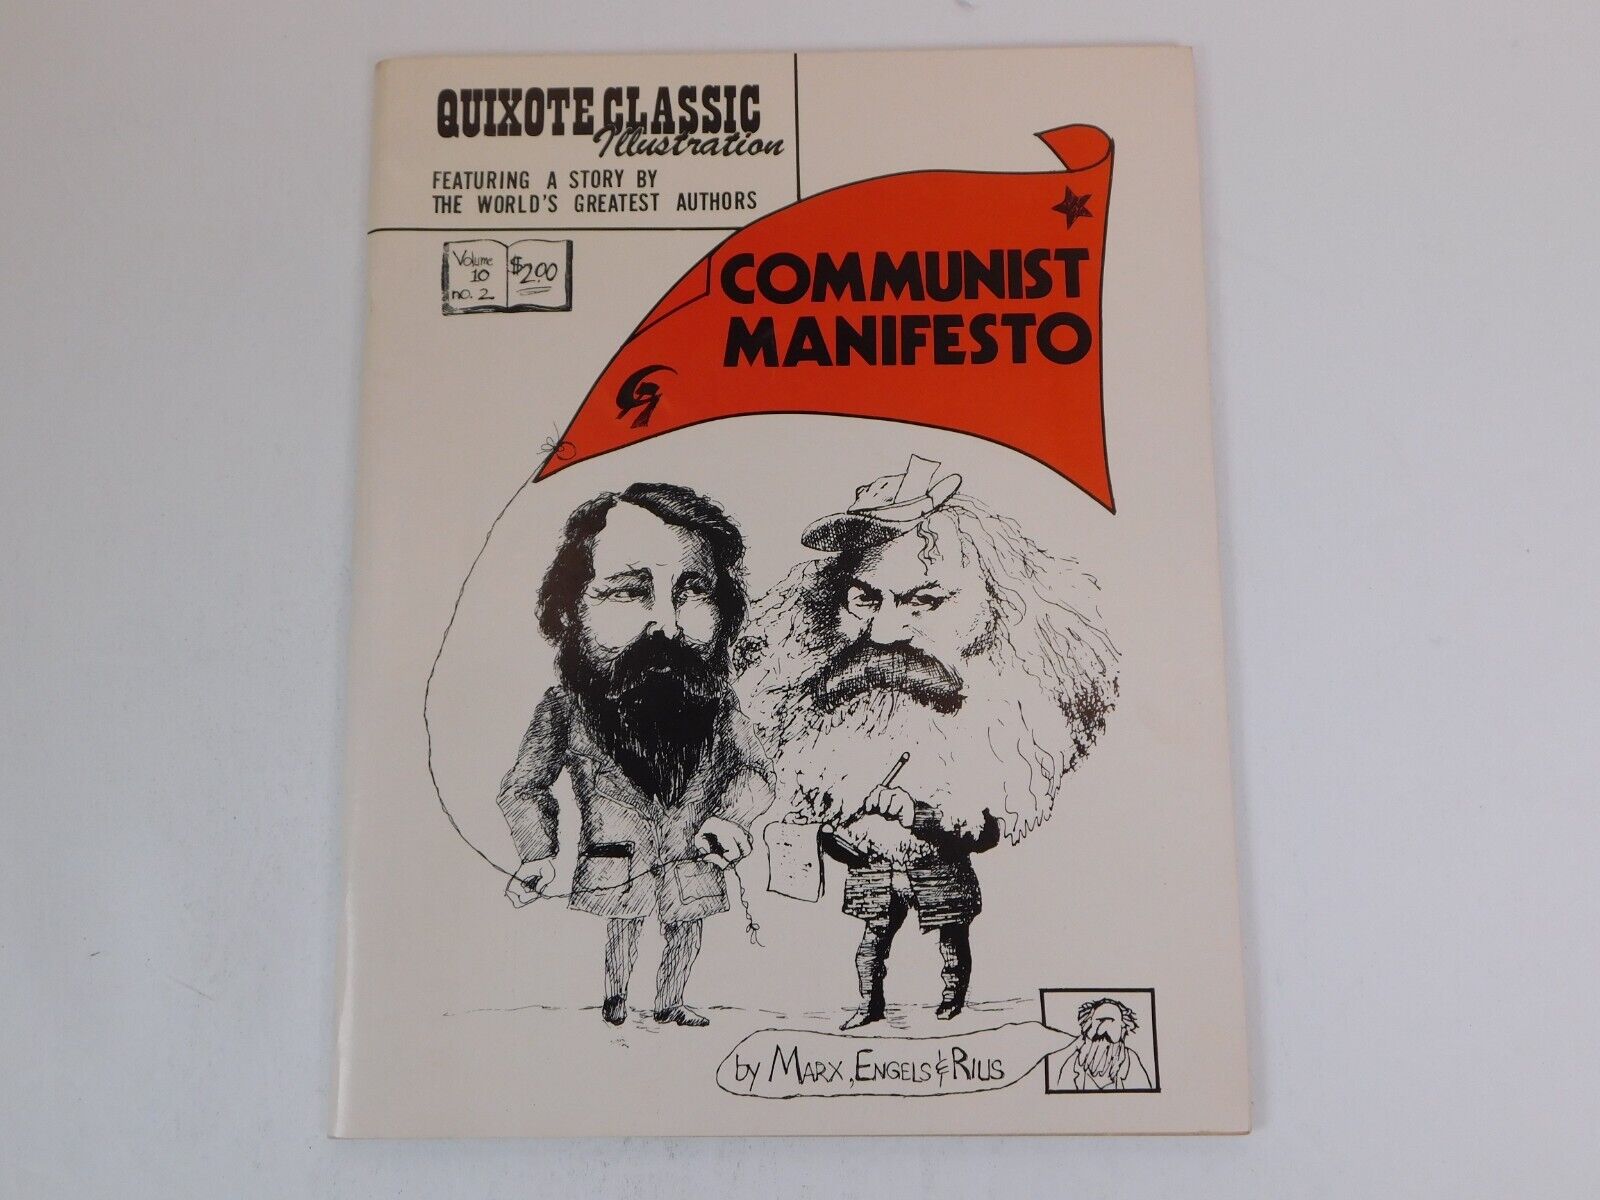 THE COMMUNIST MANIFESTO - QUIXOTE CLASSIC ILLUSTRATION - SCARCE 1975 UNDERGROUND